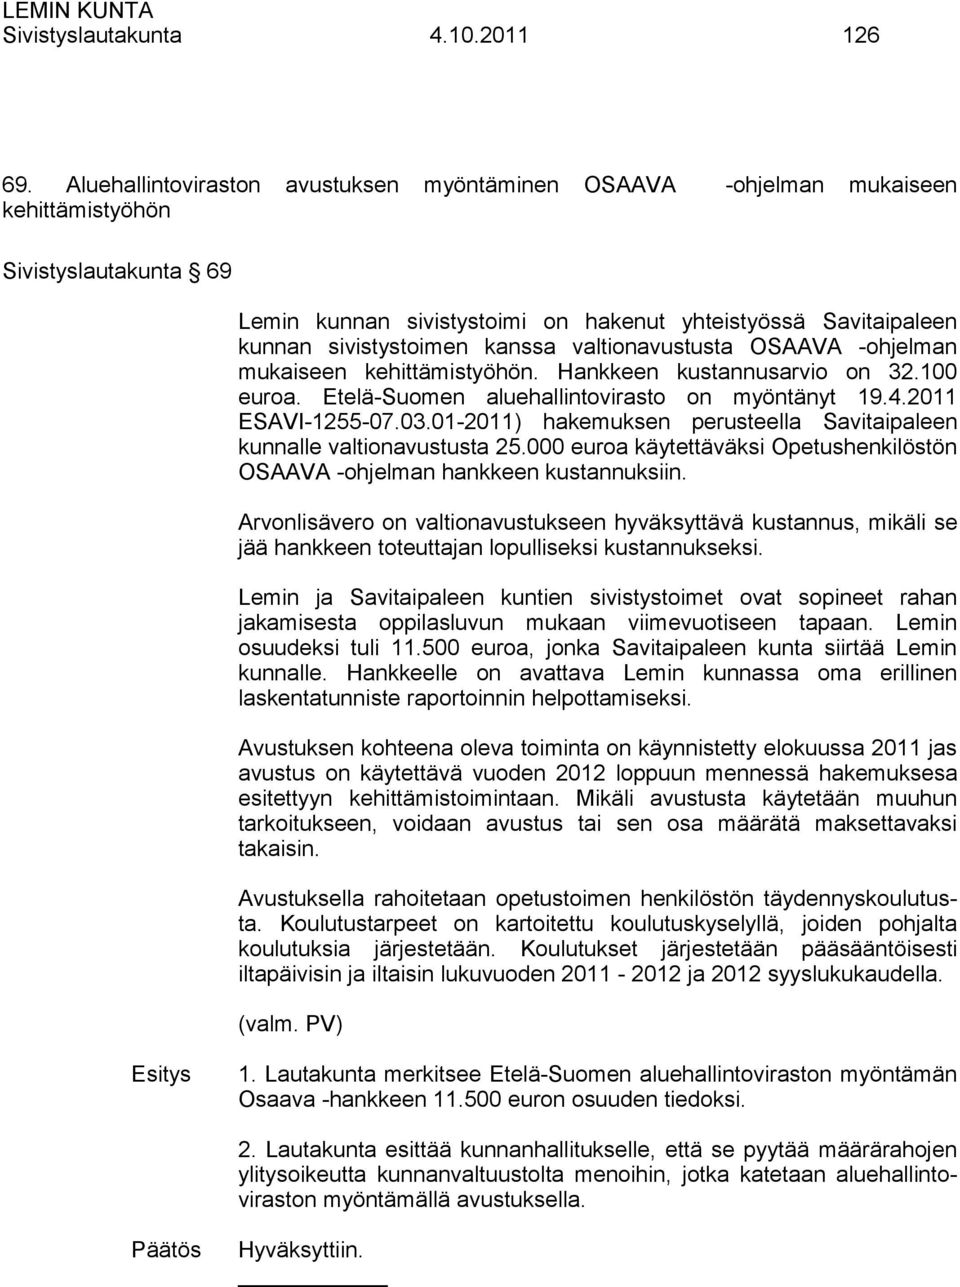 kanssa valtionavustusta OSAAVA -ohjelman mukaiseen kehittämistyöhön. Hankkeen kustannusarvio on 32.100 euroa. Etelä-Suomen aluehallintovirasto on myöntänyt 19.4.2011 ESAVI-1255-07.03.